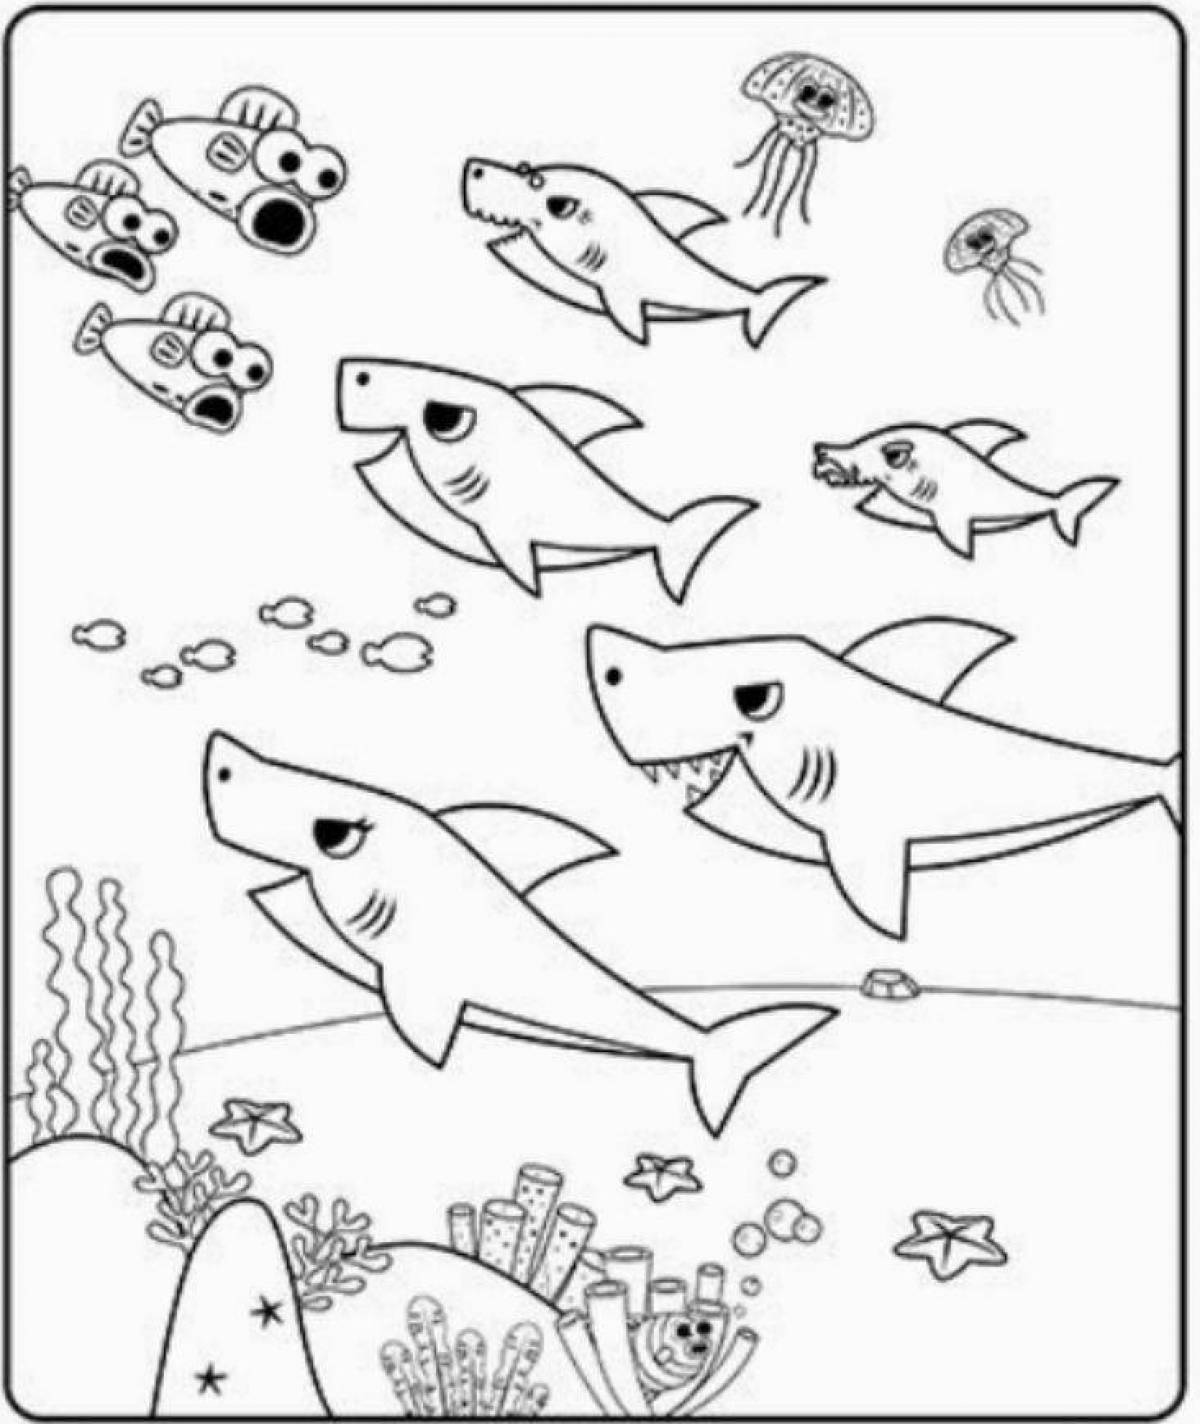 Увлекательная раскраска для детей с акулами